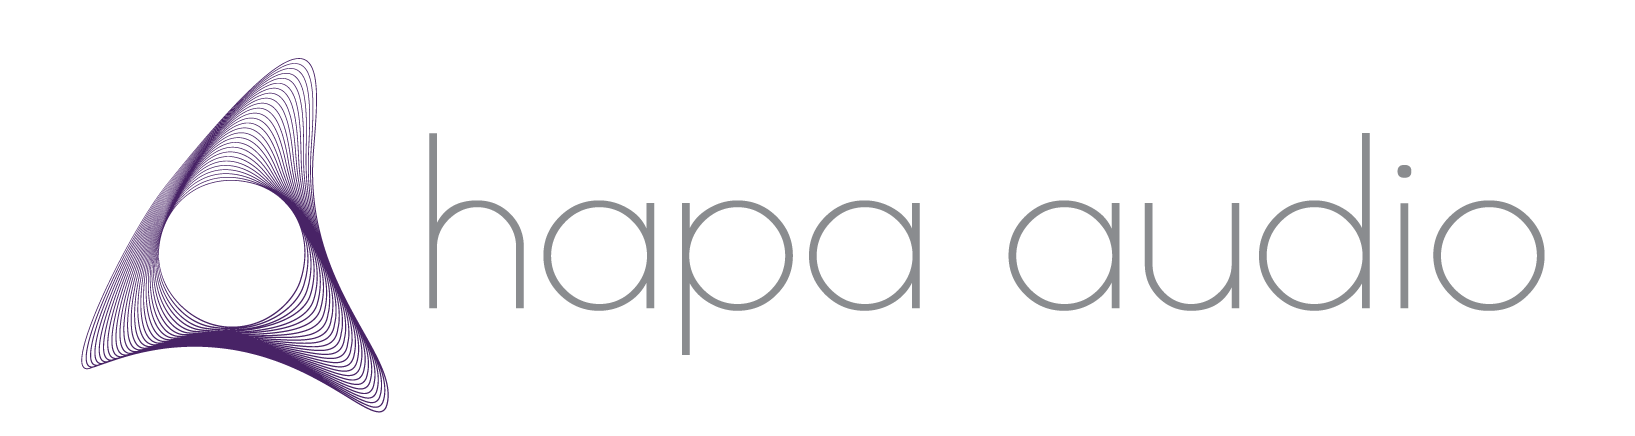 cropped-hapa_audio_logo-1.png